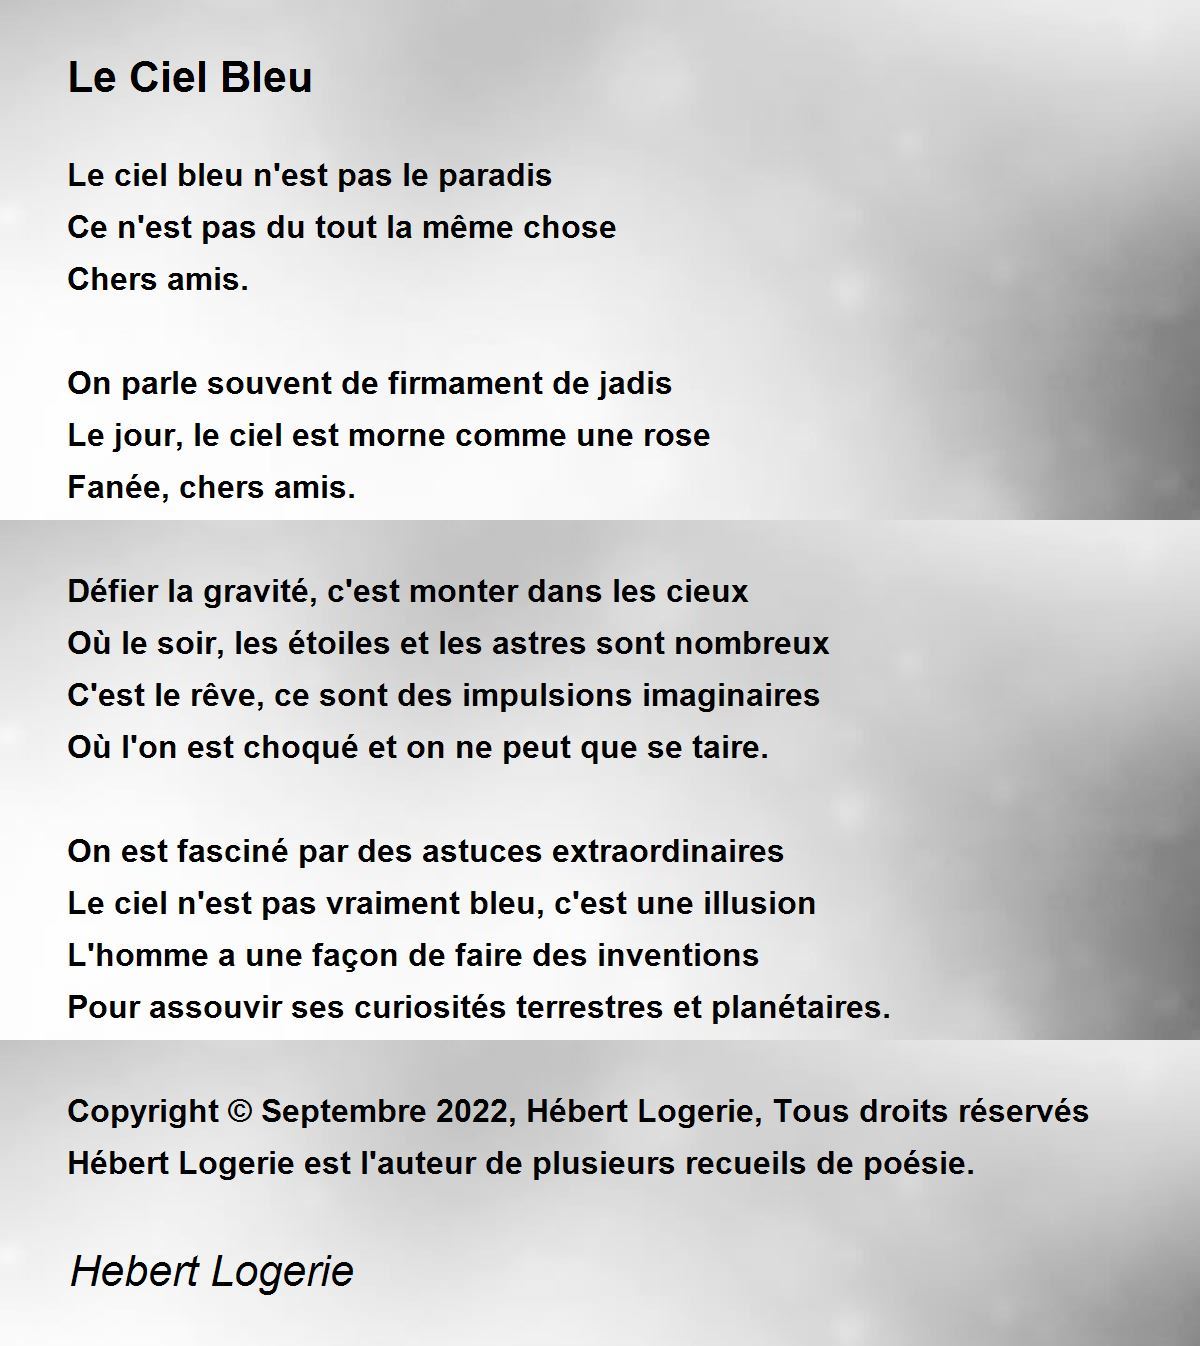 Le Ciel Bleu - Le Ciel Bleu Poem by Hebert Logerie